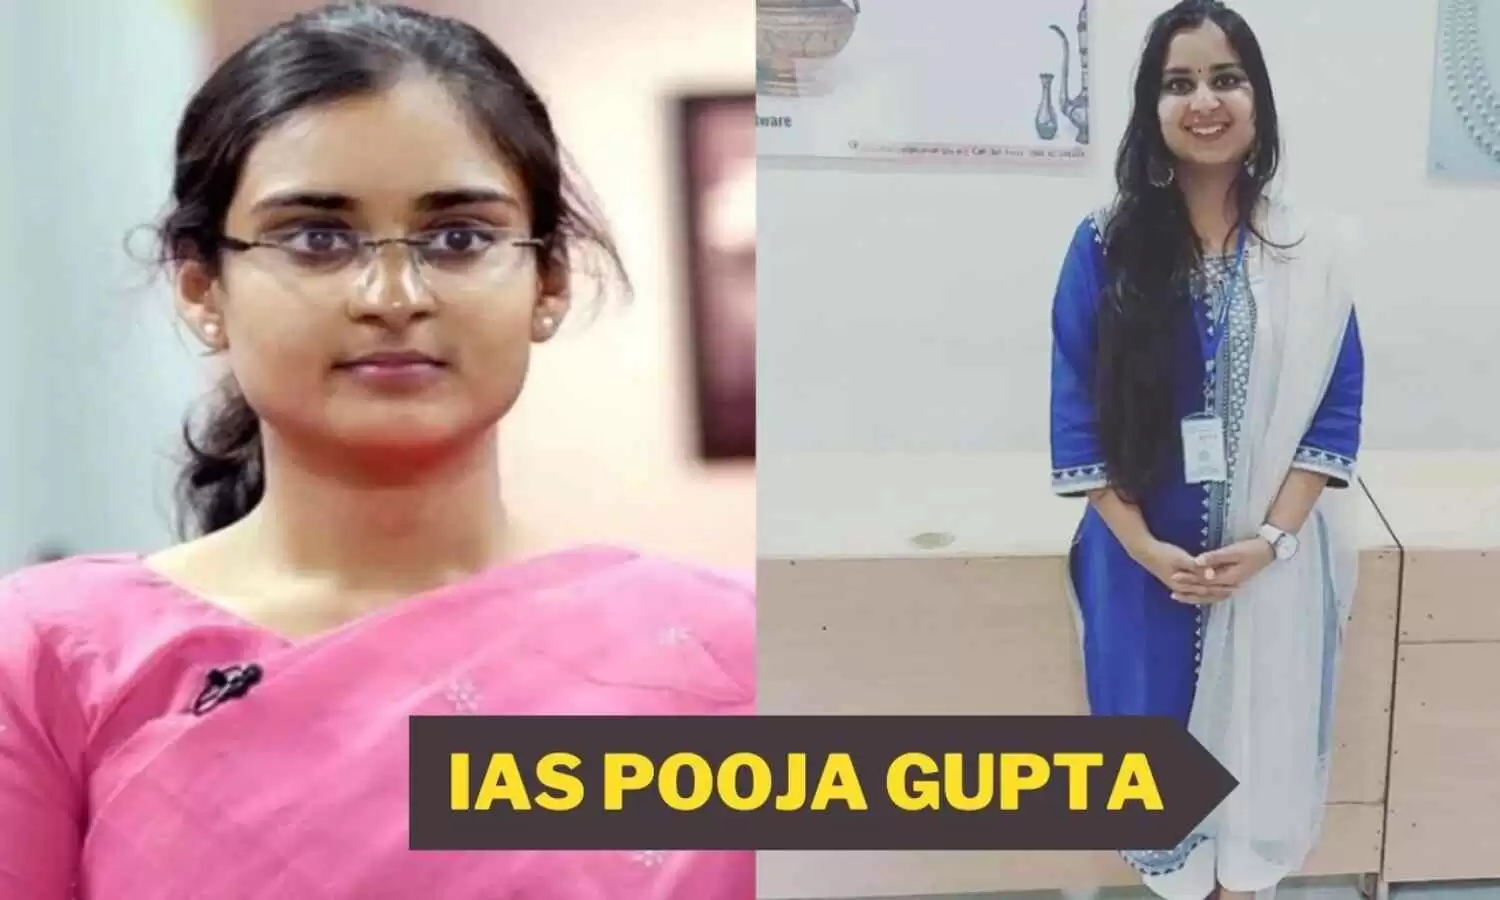 IAS Pooja Gupta